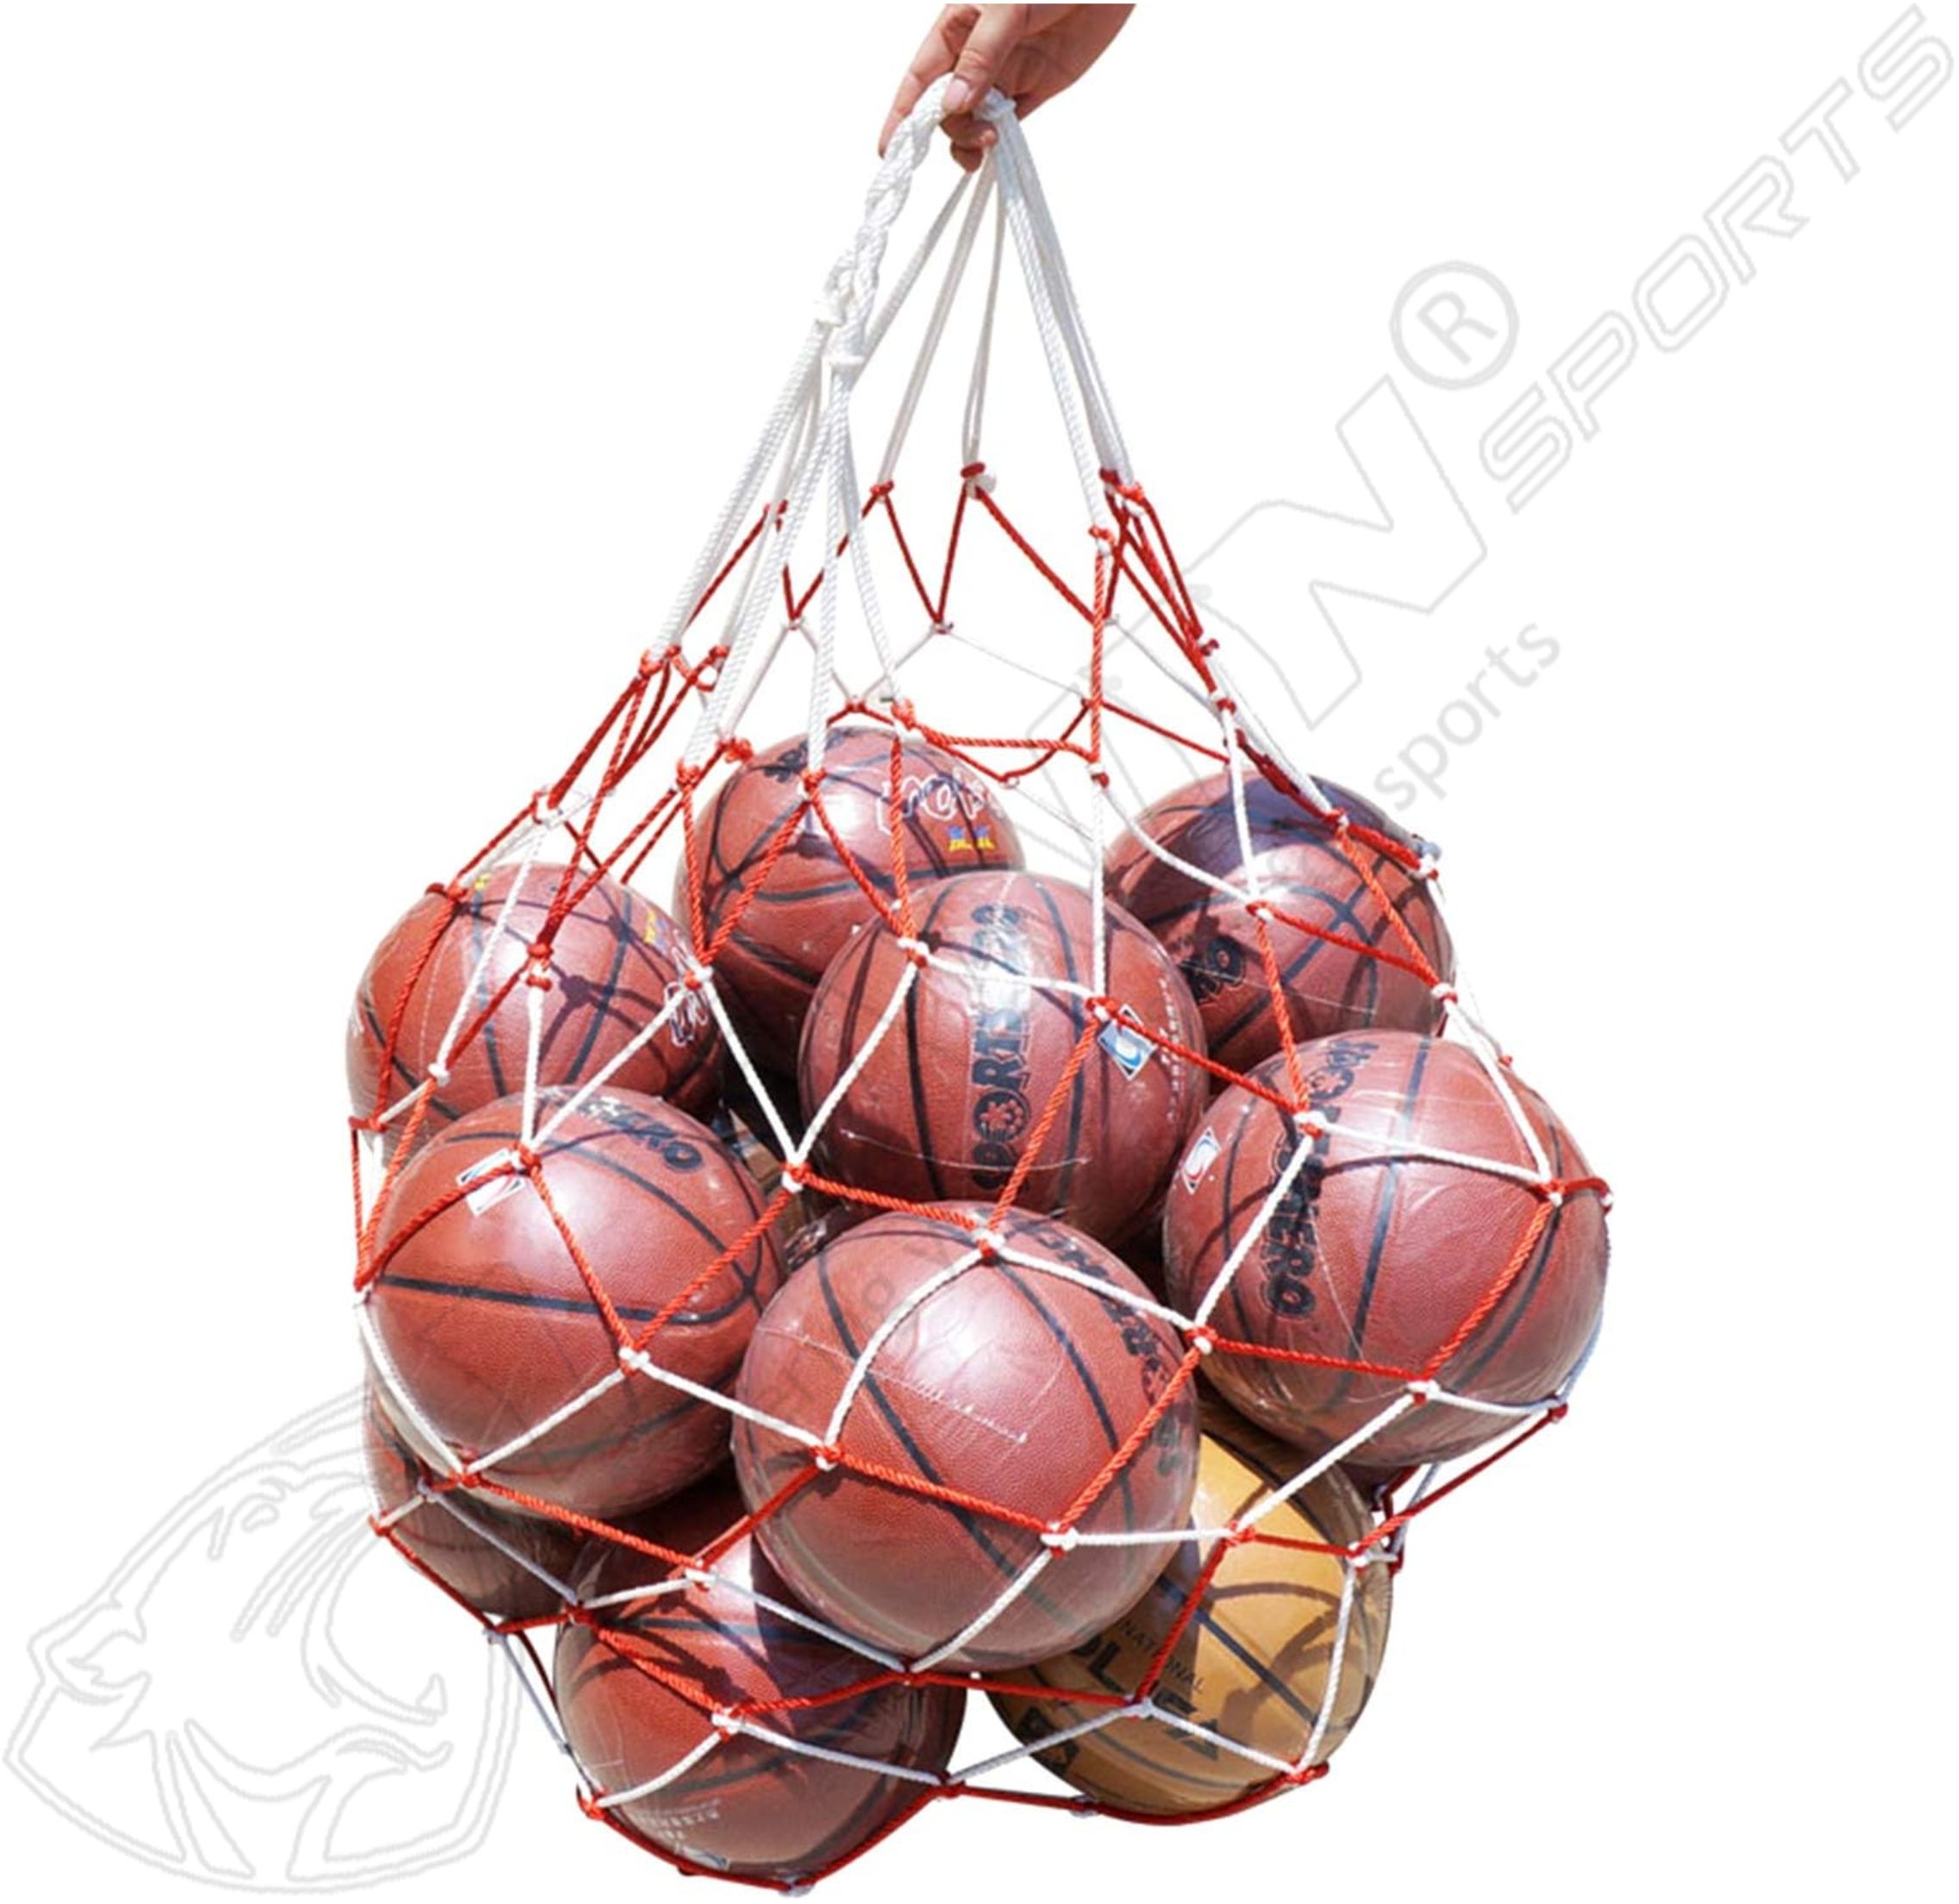 Ball carry net